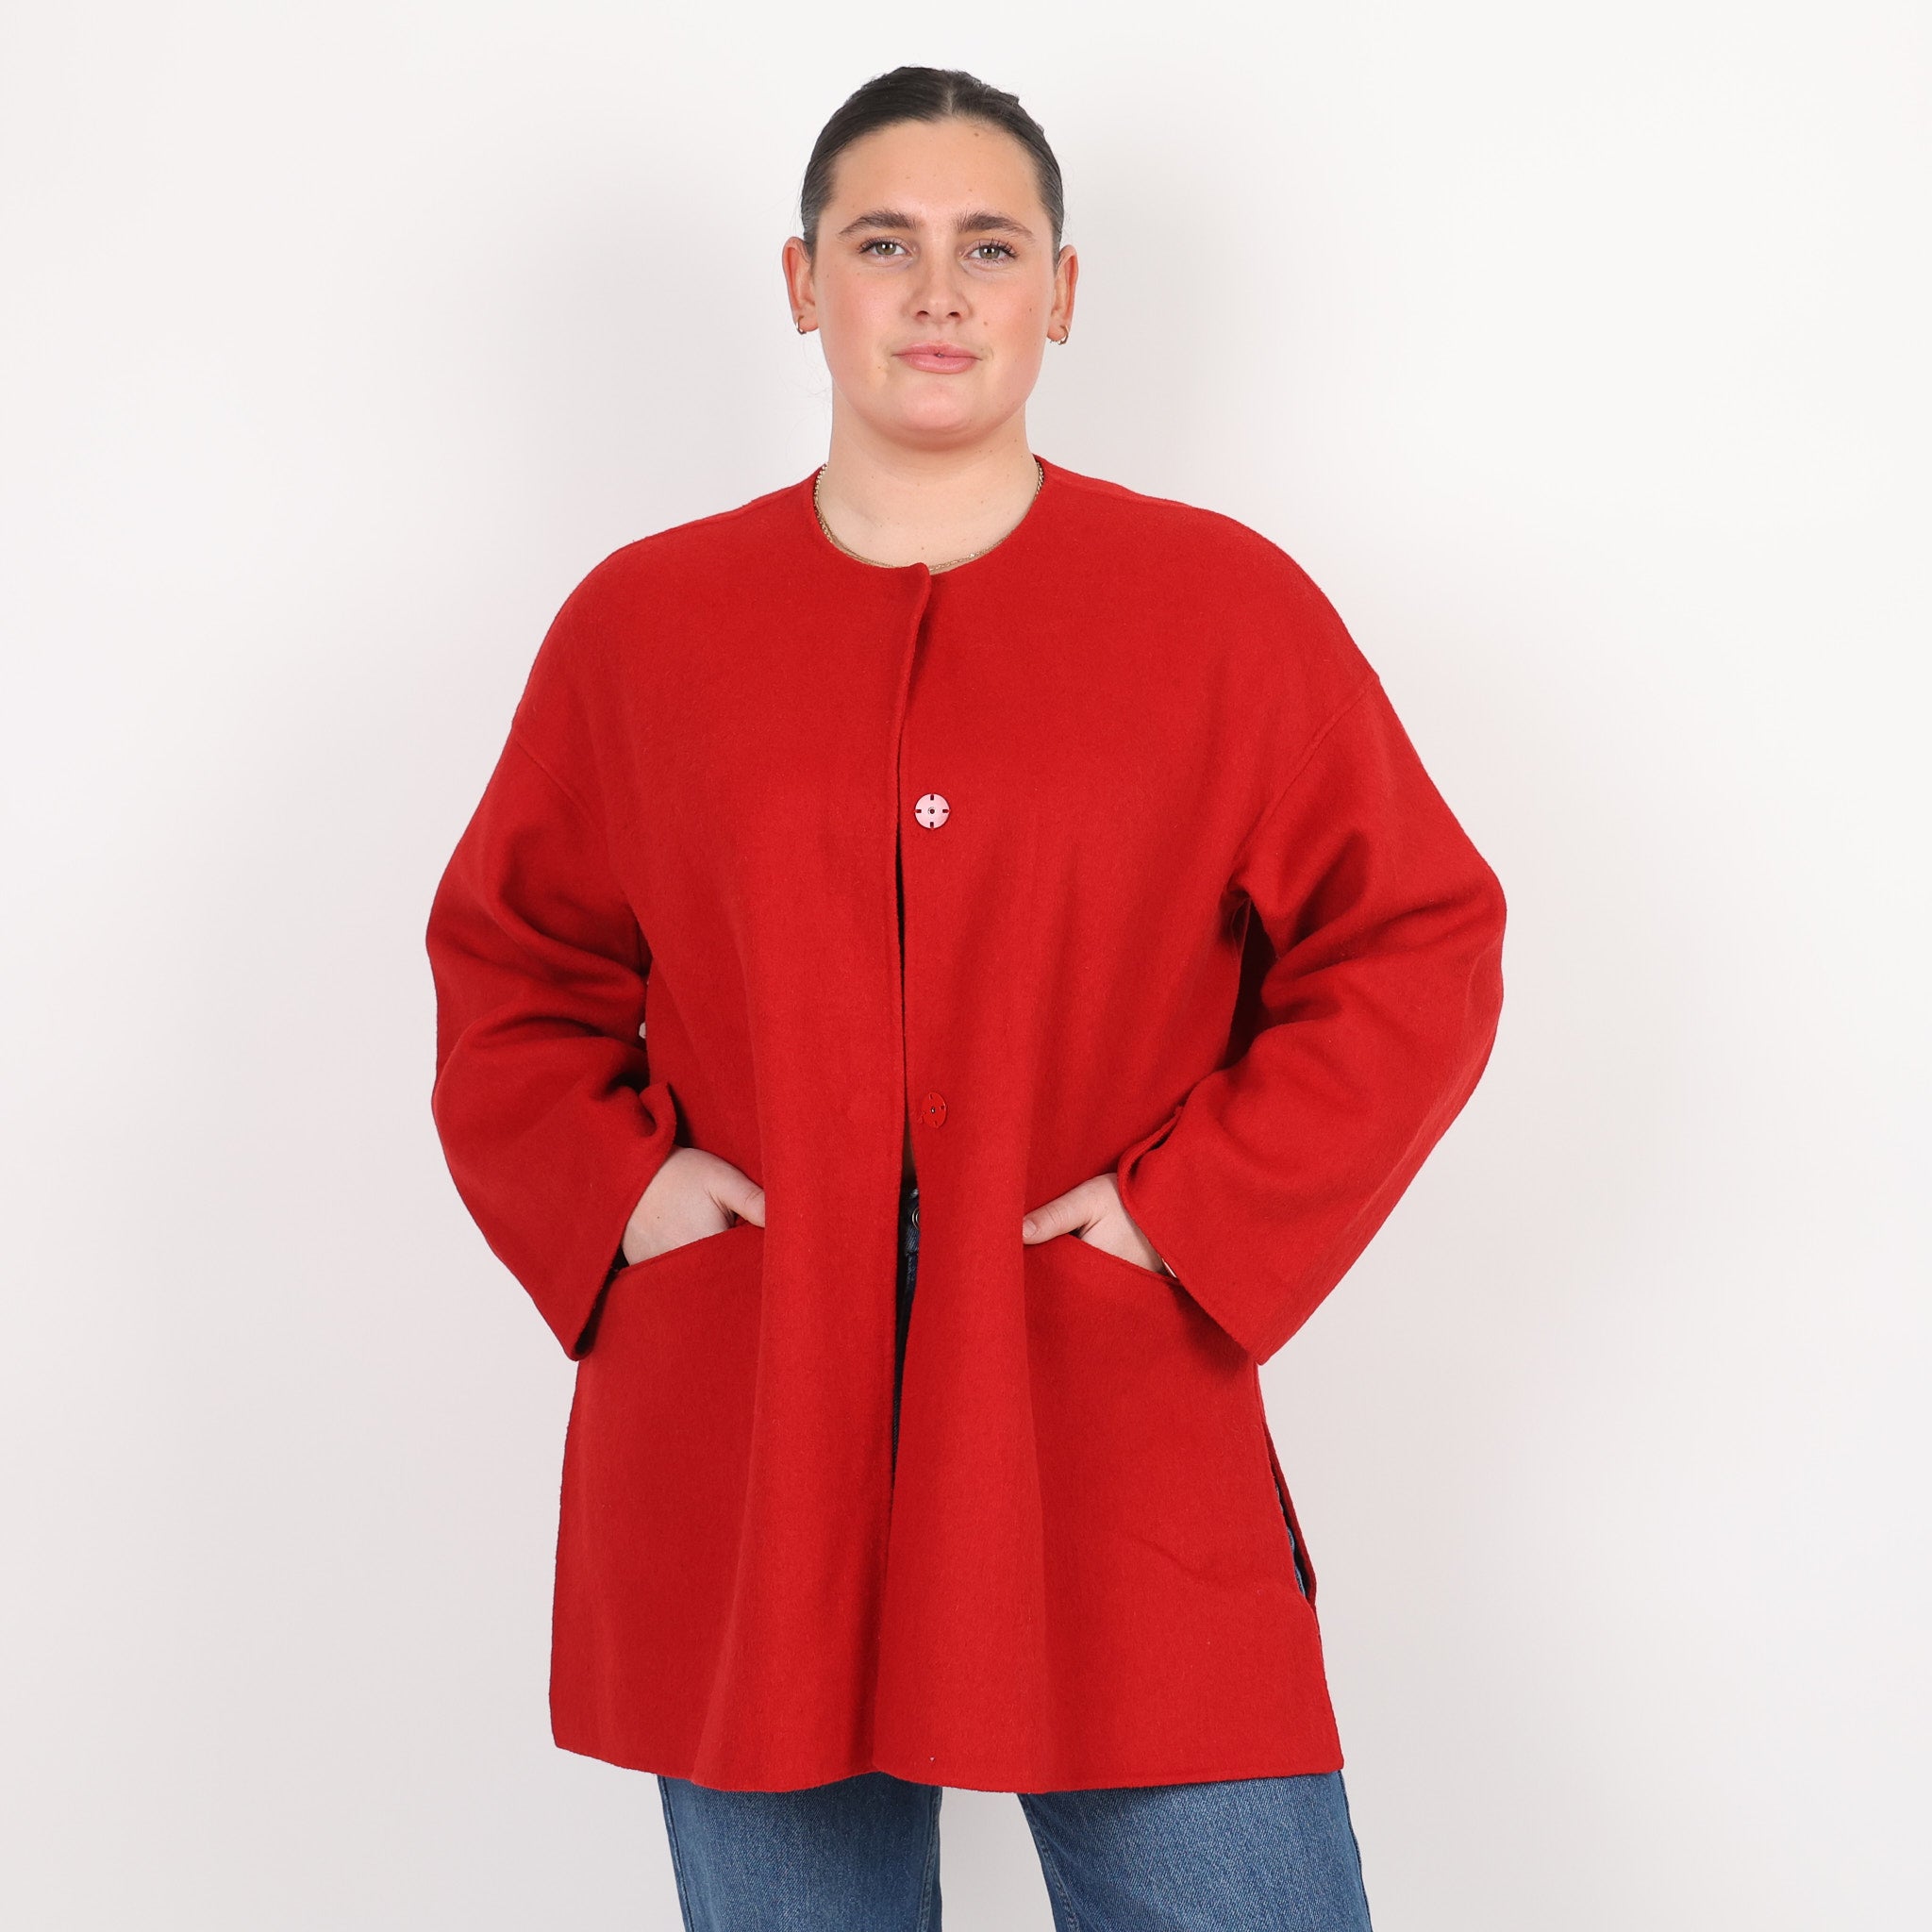 Jacket, UK Size 14